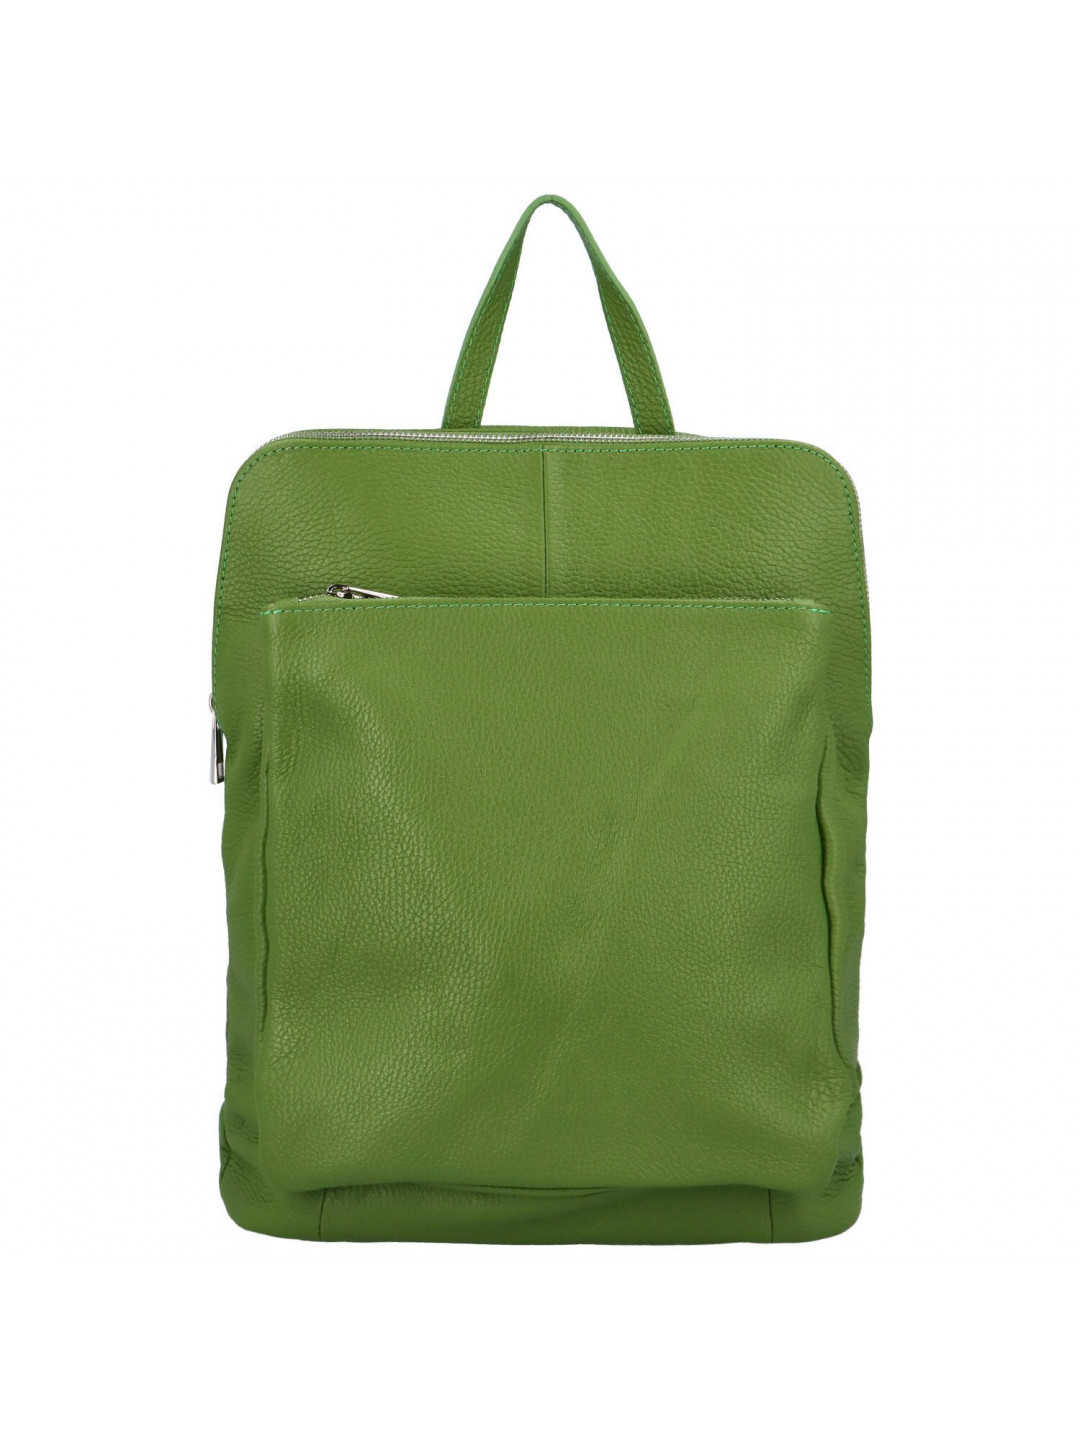 Dámský kožený batůžek kabelka zelený – Delami Vera Pelle Houtel